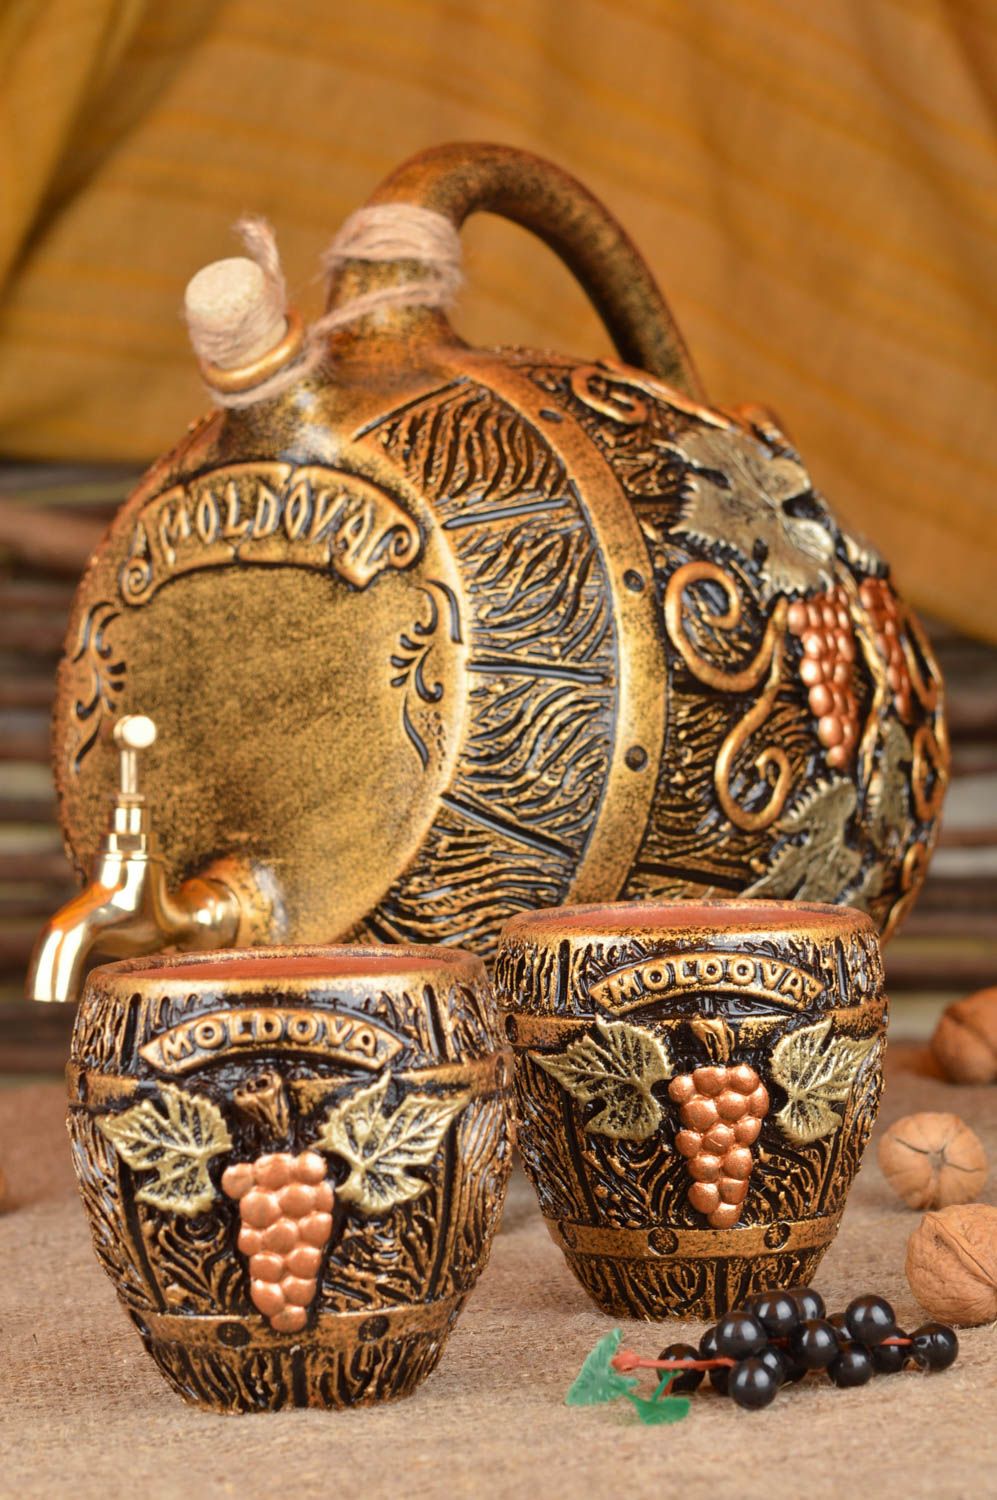 Глиняная бутылка со стаканами набор из 3 изделий глиняные ручная работа фото 1